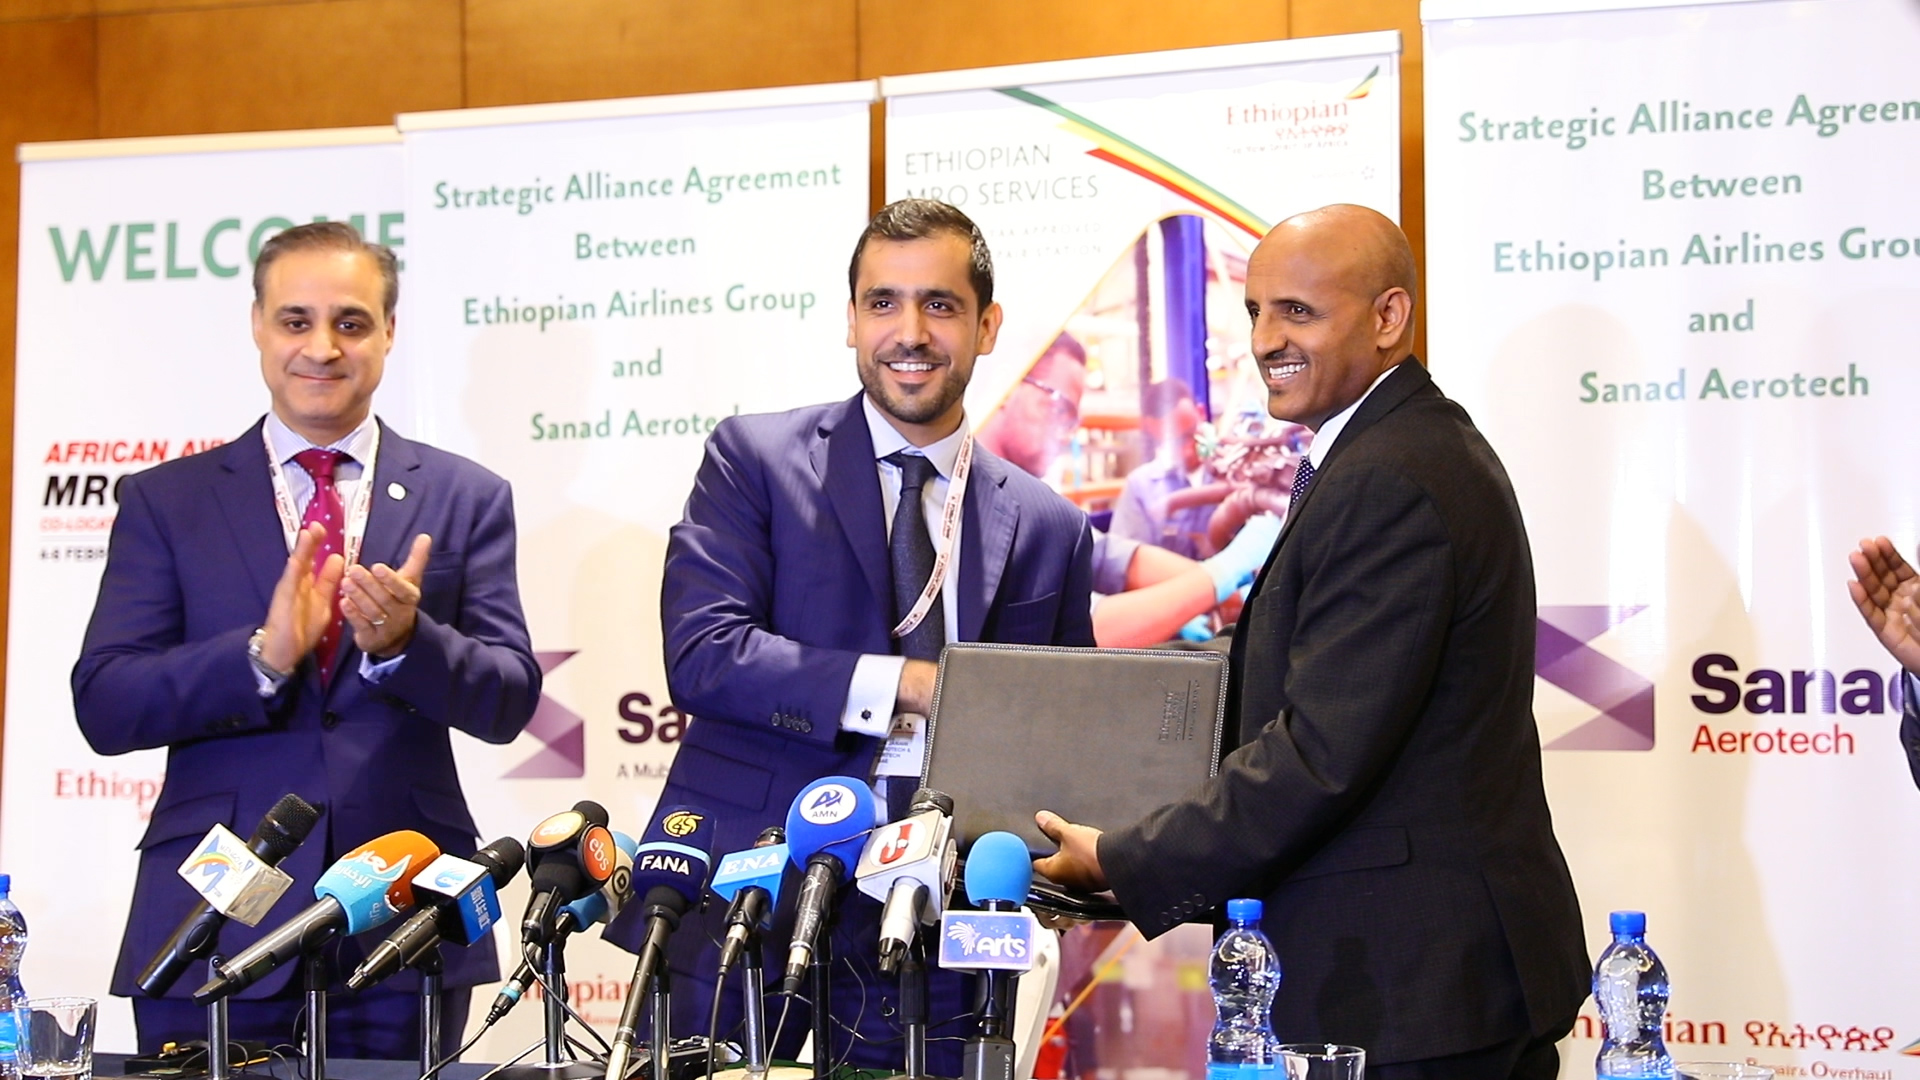 سند لتقنيات الطيران تتعاون مع الخطوط الجوية الإثيوبية لإنشاء مركز لخدمات الصيانة والإصلاح والعمرة في أفريقيا